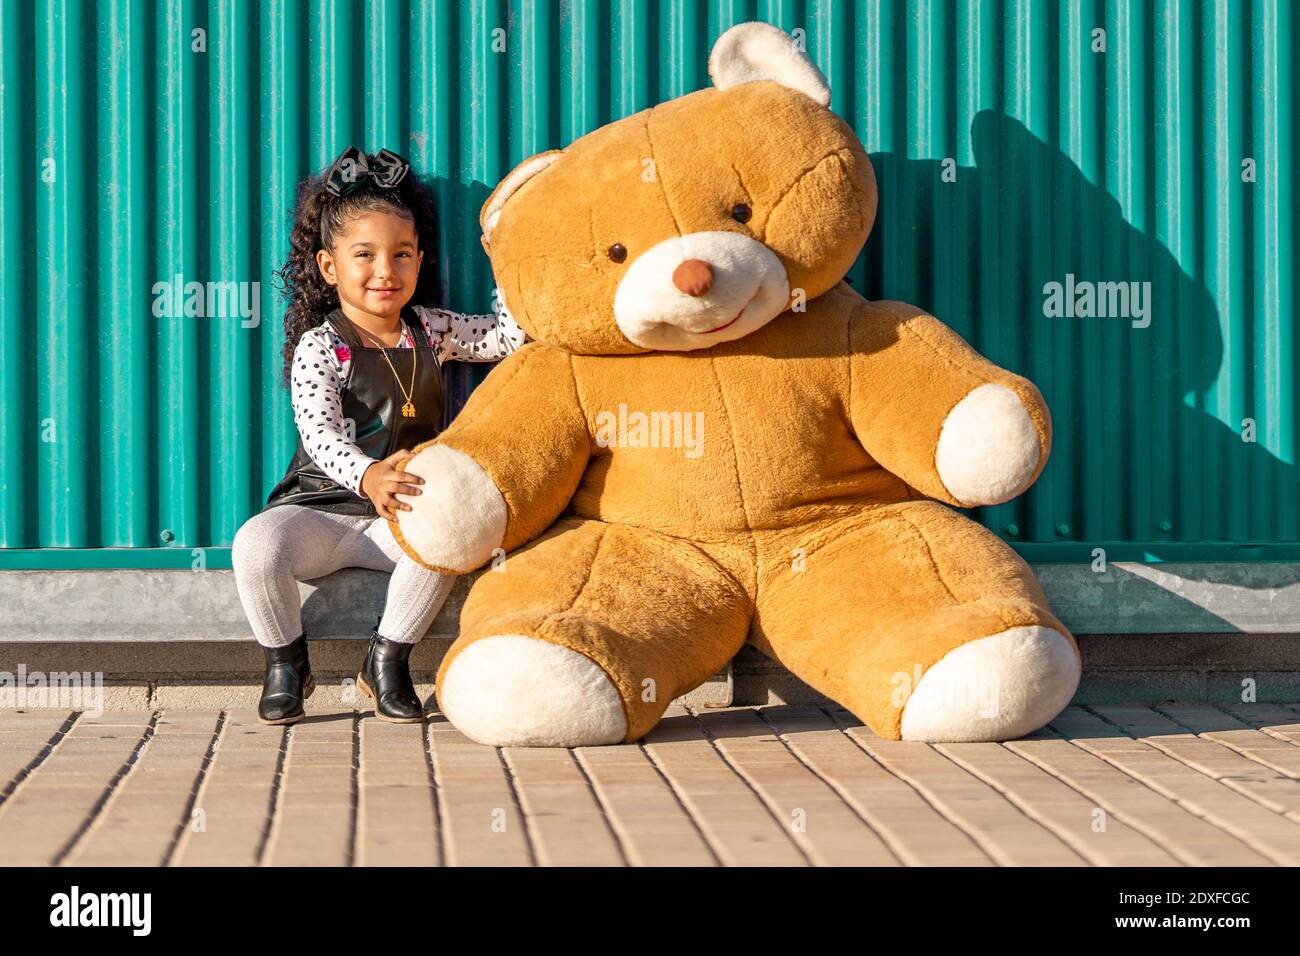 Fille souriante assise avec un ours en peluche contre un mur vert Banque D'Images